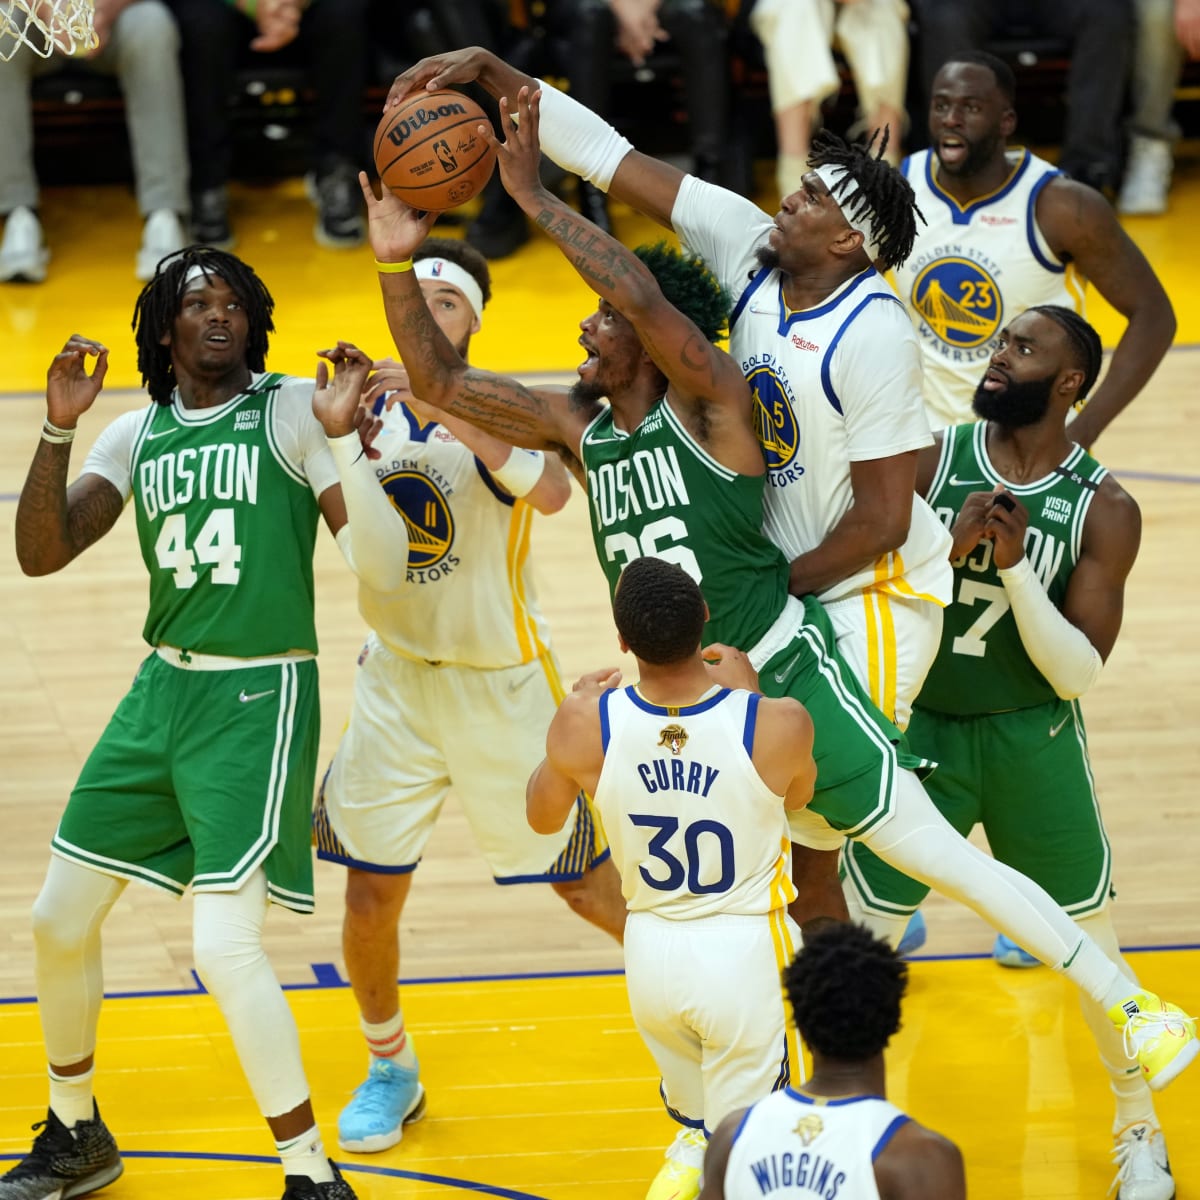 2022 NBA Finals Live: Warriors vs. Celtics Game 3 Live Streaming